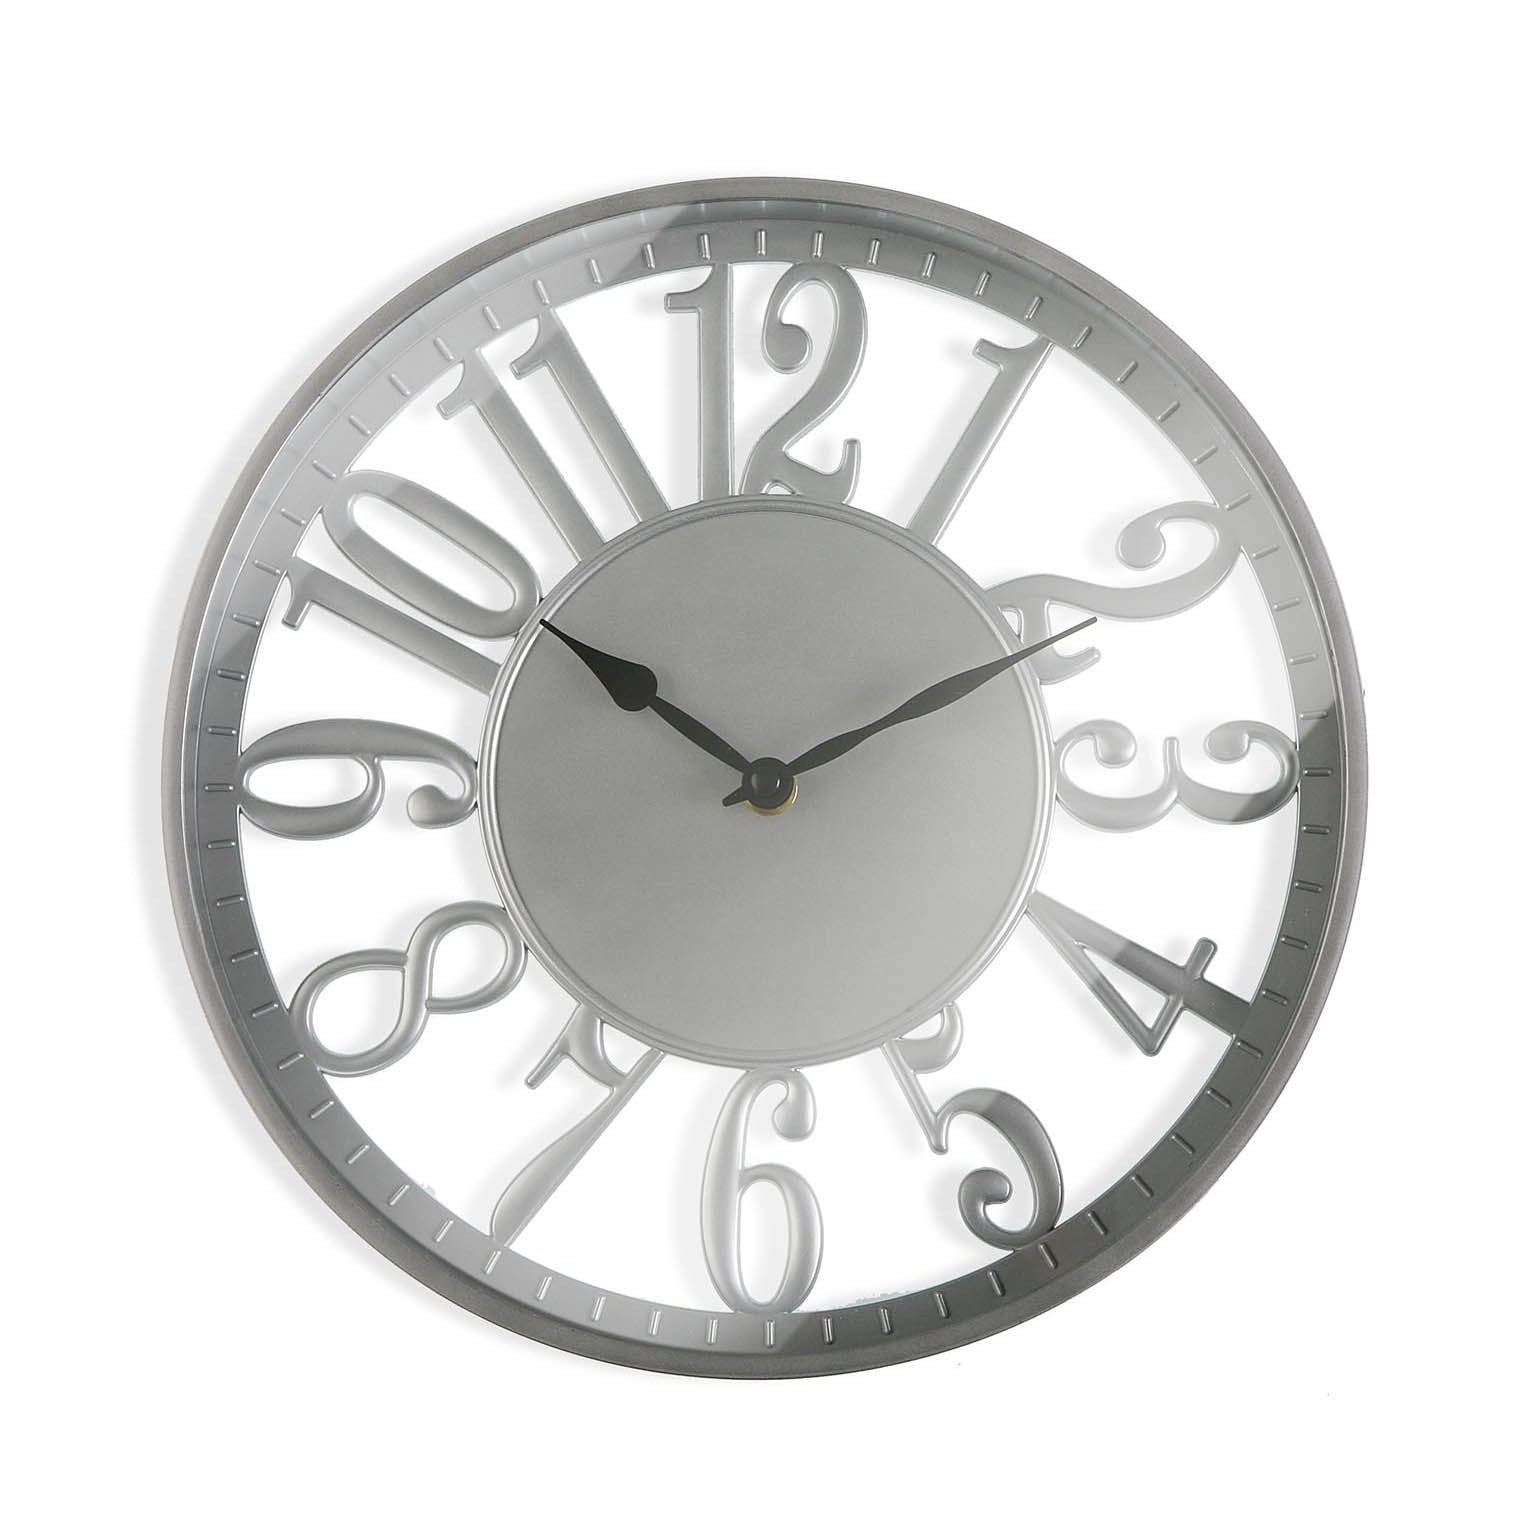 Reloj de pared - 19520060